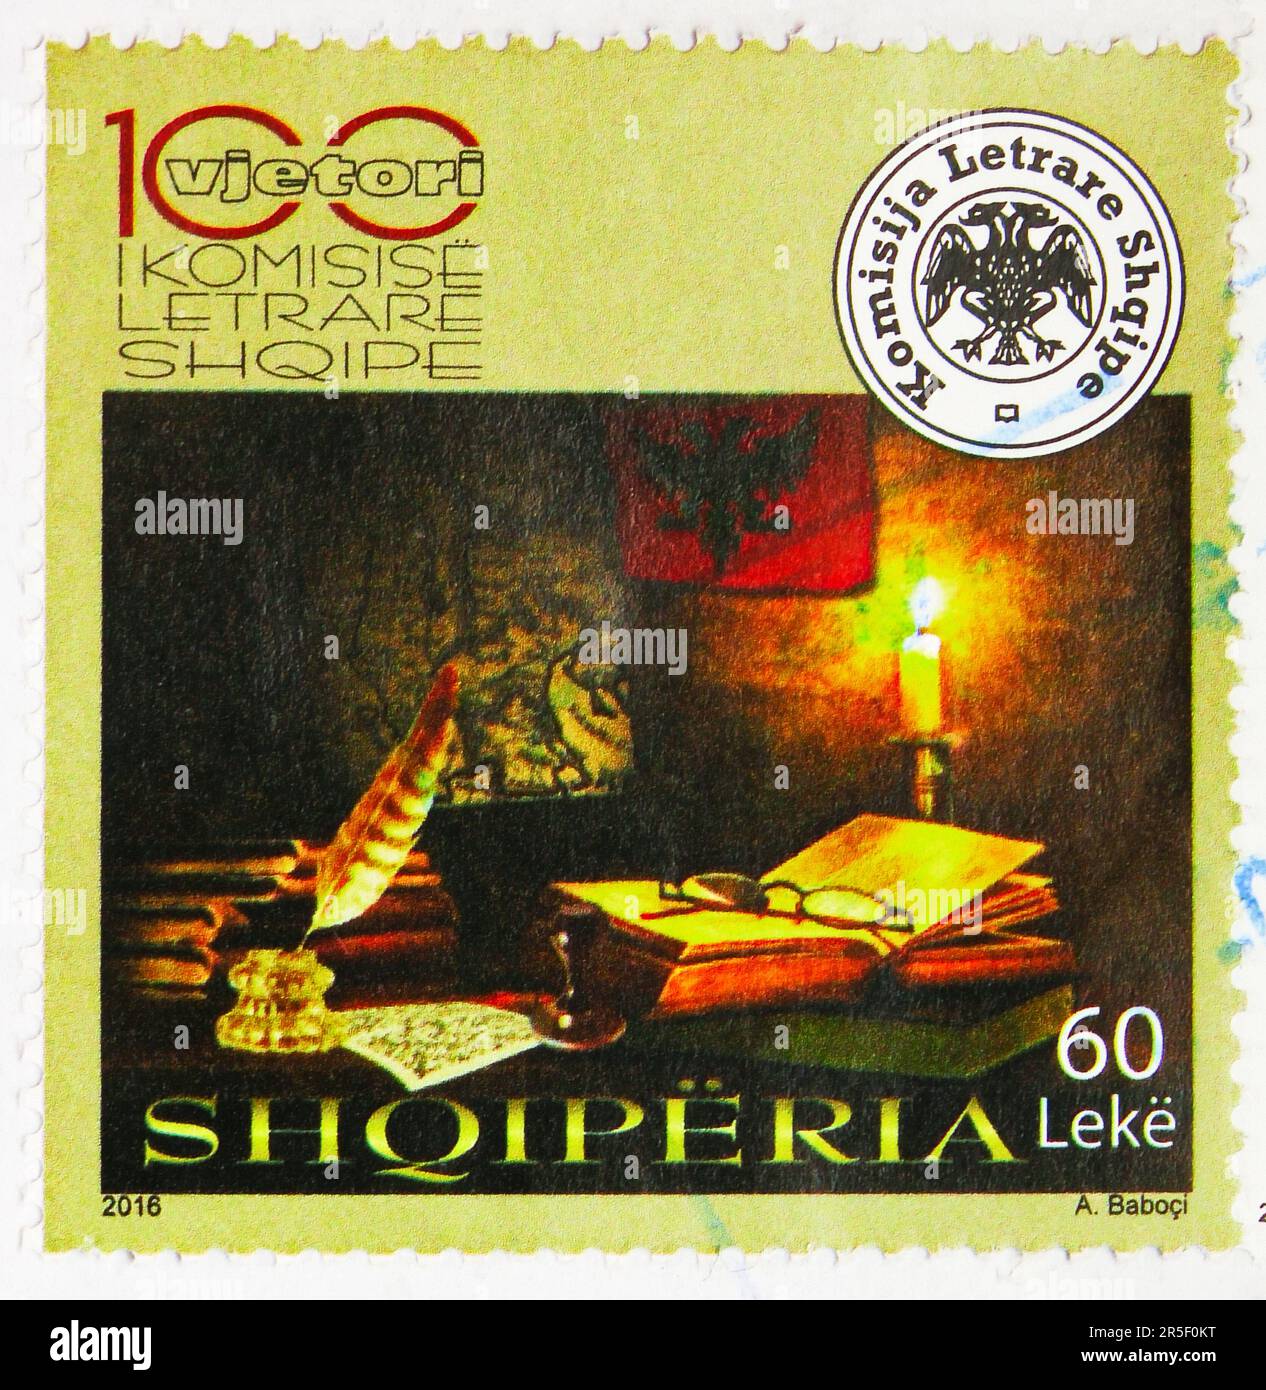 MOSCOU, RUSSIE - 17 MAI 2023 : timbre-poste imprimé en Albanie consacré au centenaire de la Commission littéraire albanaise, vers 2016 Banque D'Images